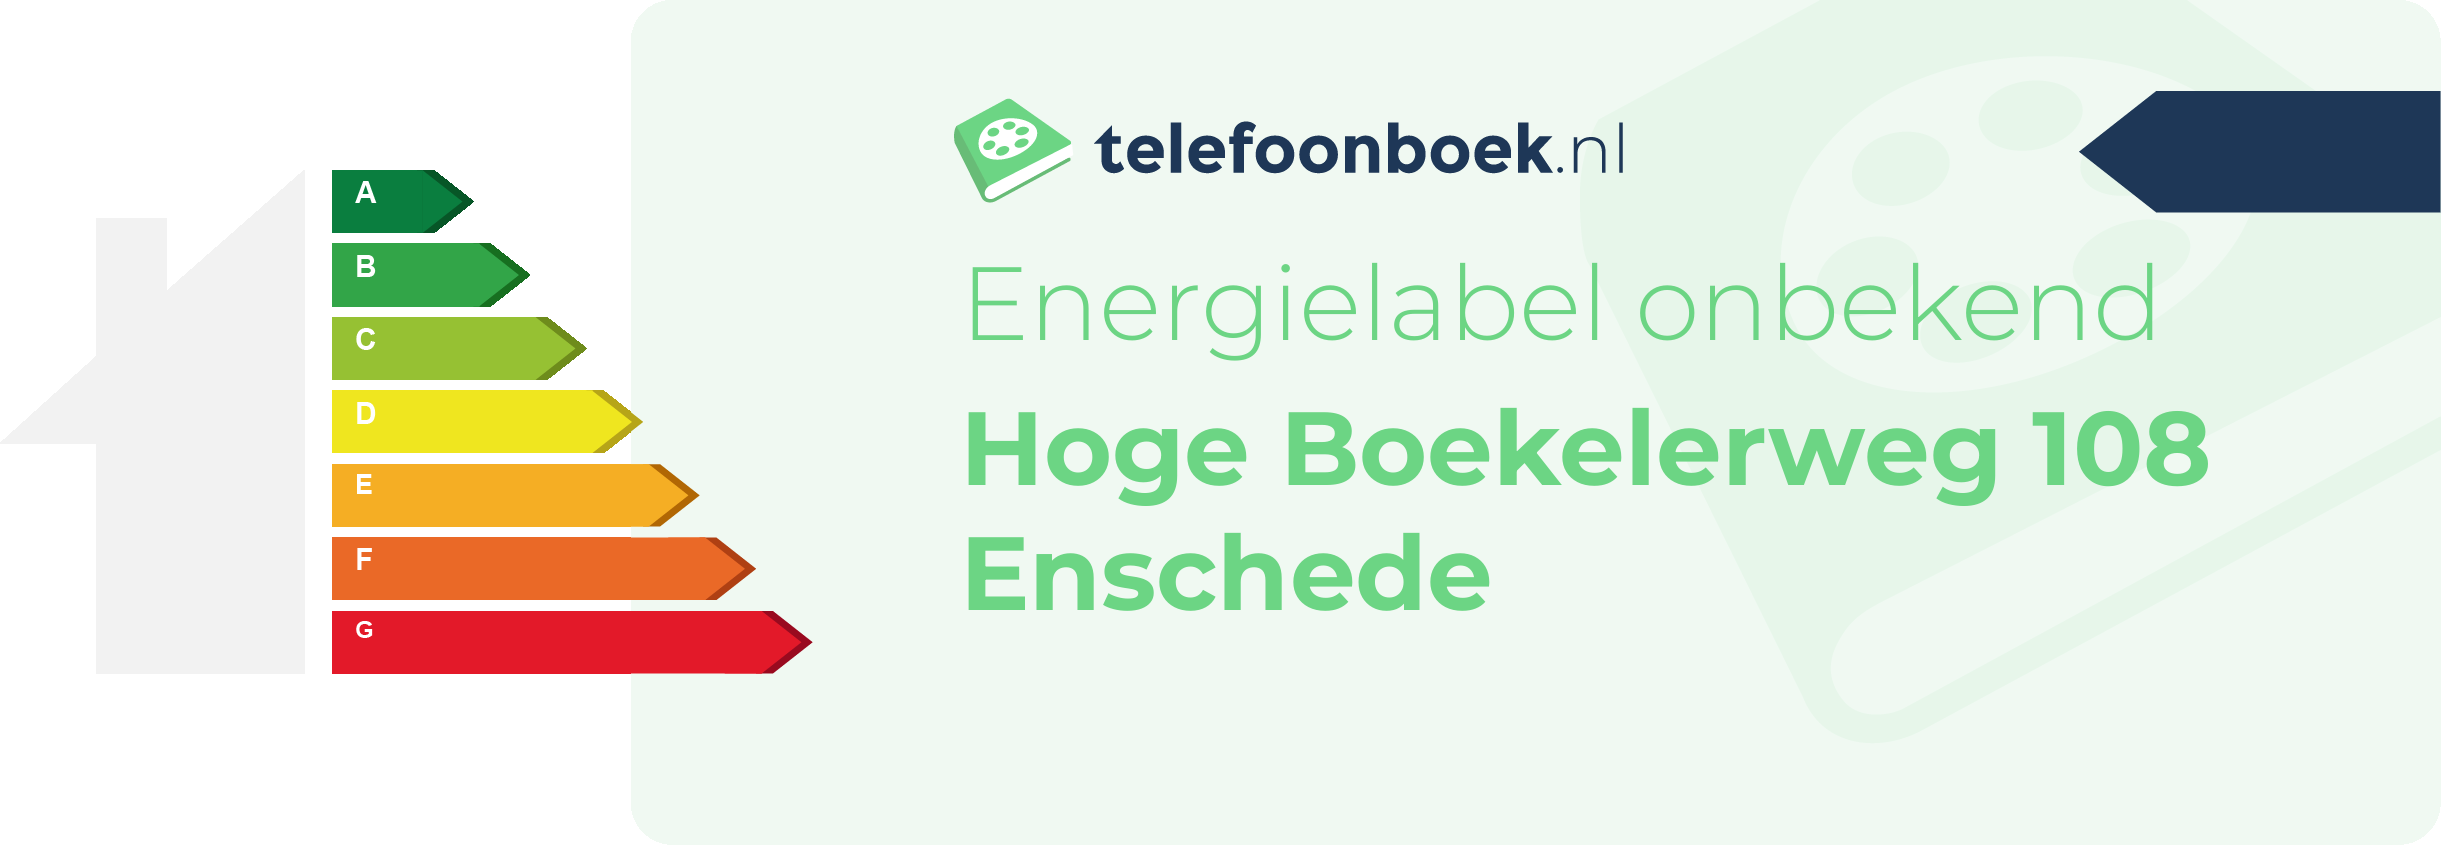 Energielabel Hoge Boekelerweg 108 Enschede